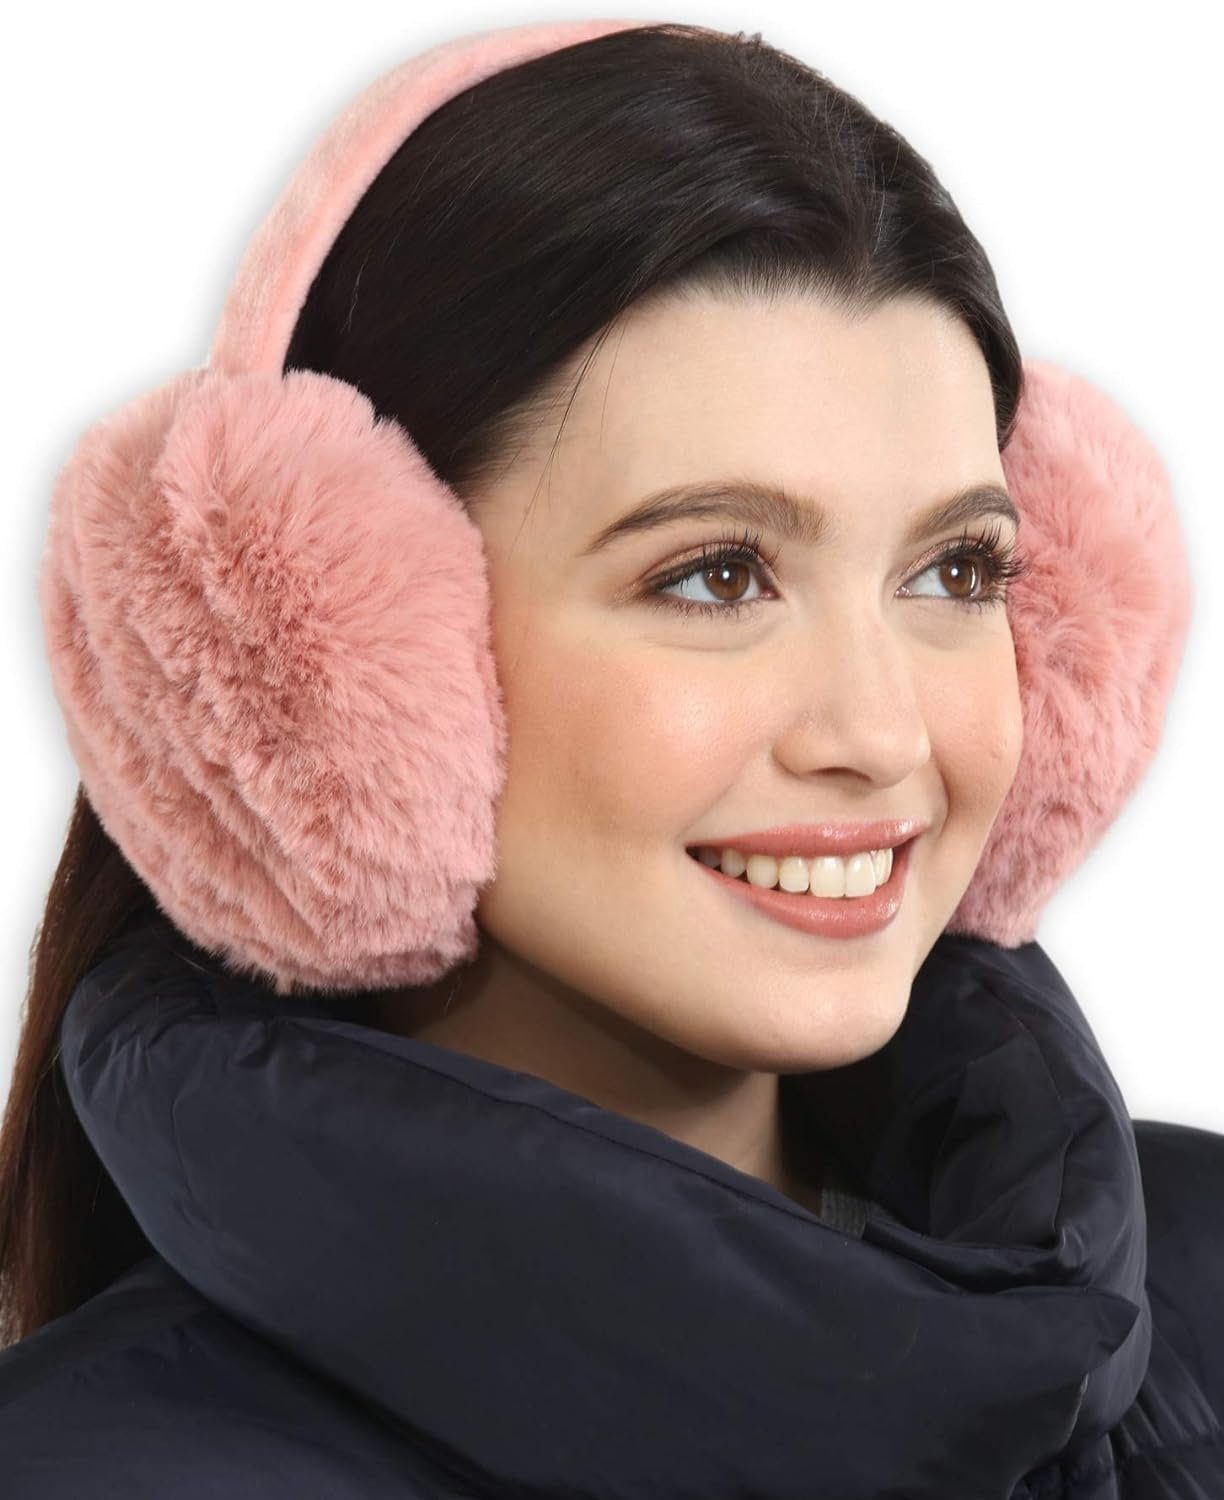 Rosa für Ohrenwärmer Wetter Ohrenschützer,Winter-Ohrenwärmer,Ohrenschützer kaltes Opspring